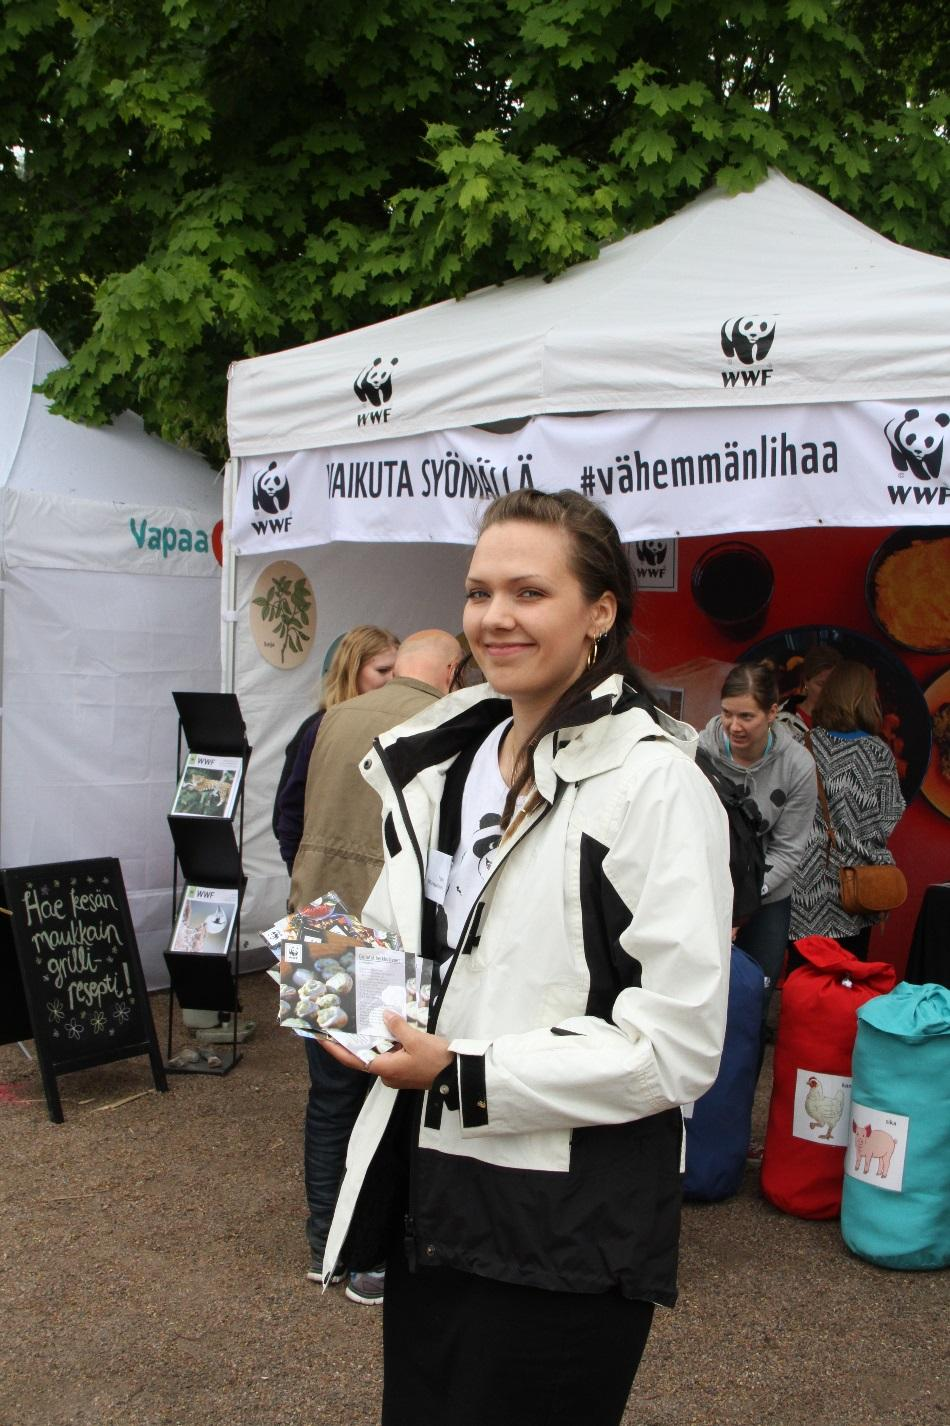 Paula Kallio/WWF Ympäristökasvatuksen näkökulmasta tärkein periaate on, että lapset ja nuoret kasvavat kriittisiksi kansalaisiksi demokratiaa